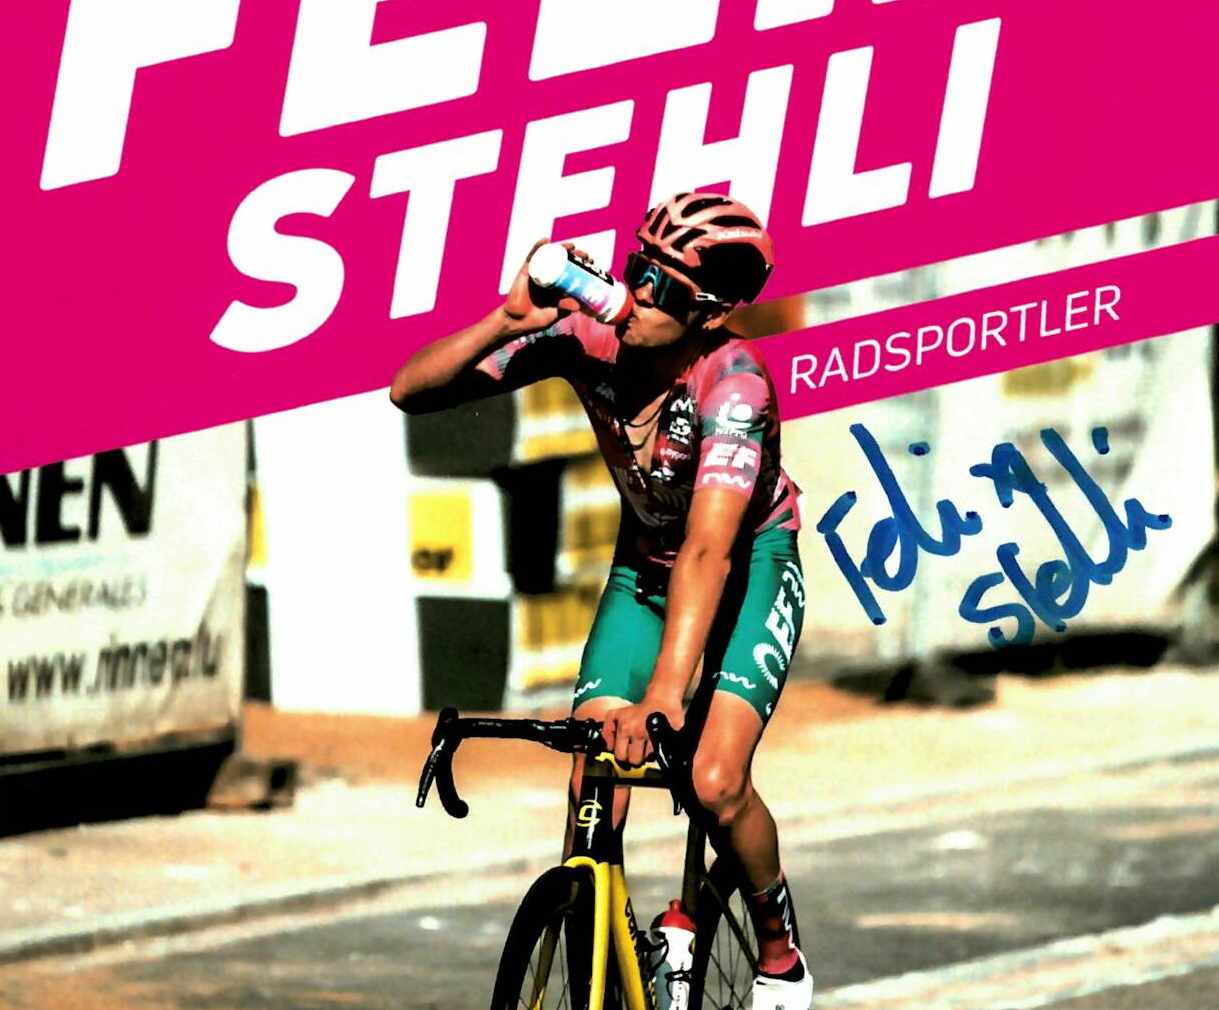 Felix Stehli, Radsportler, Autogrammkarte, Sponsoring, Hofstette